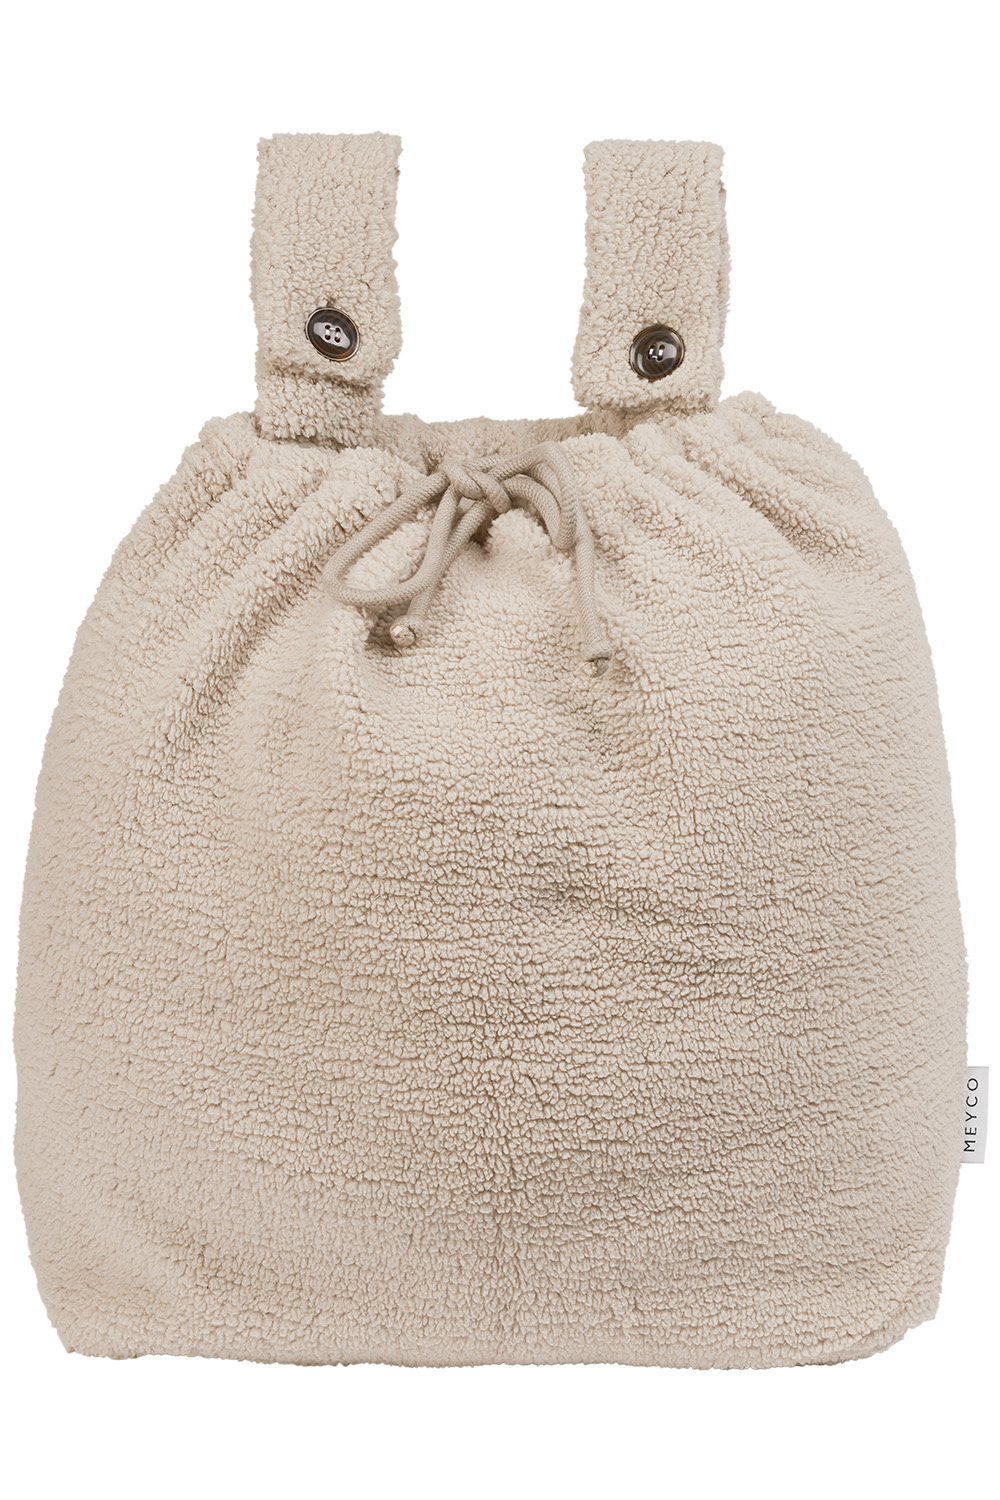 Playpen storage bag Teddy - sand